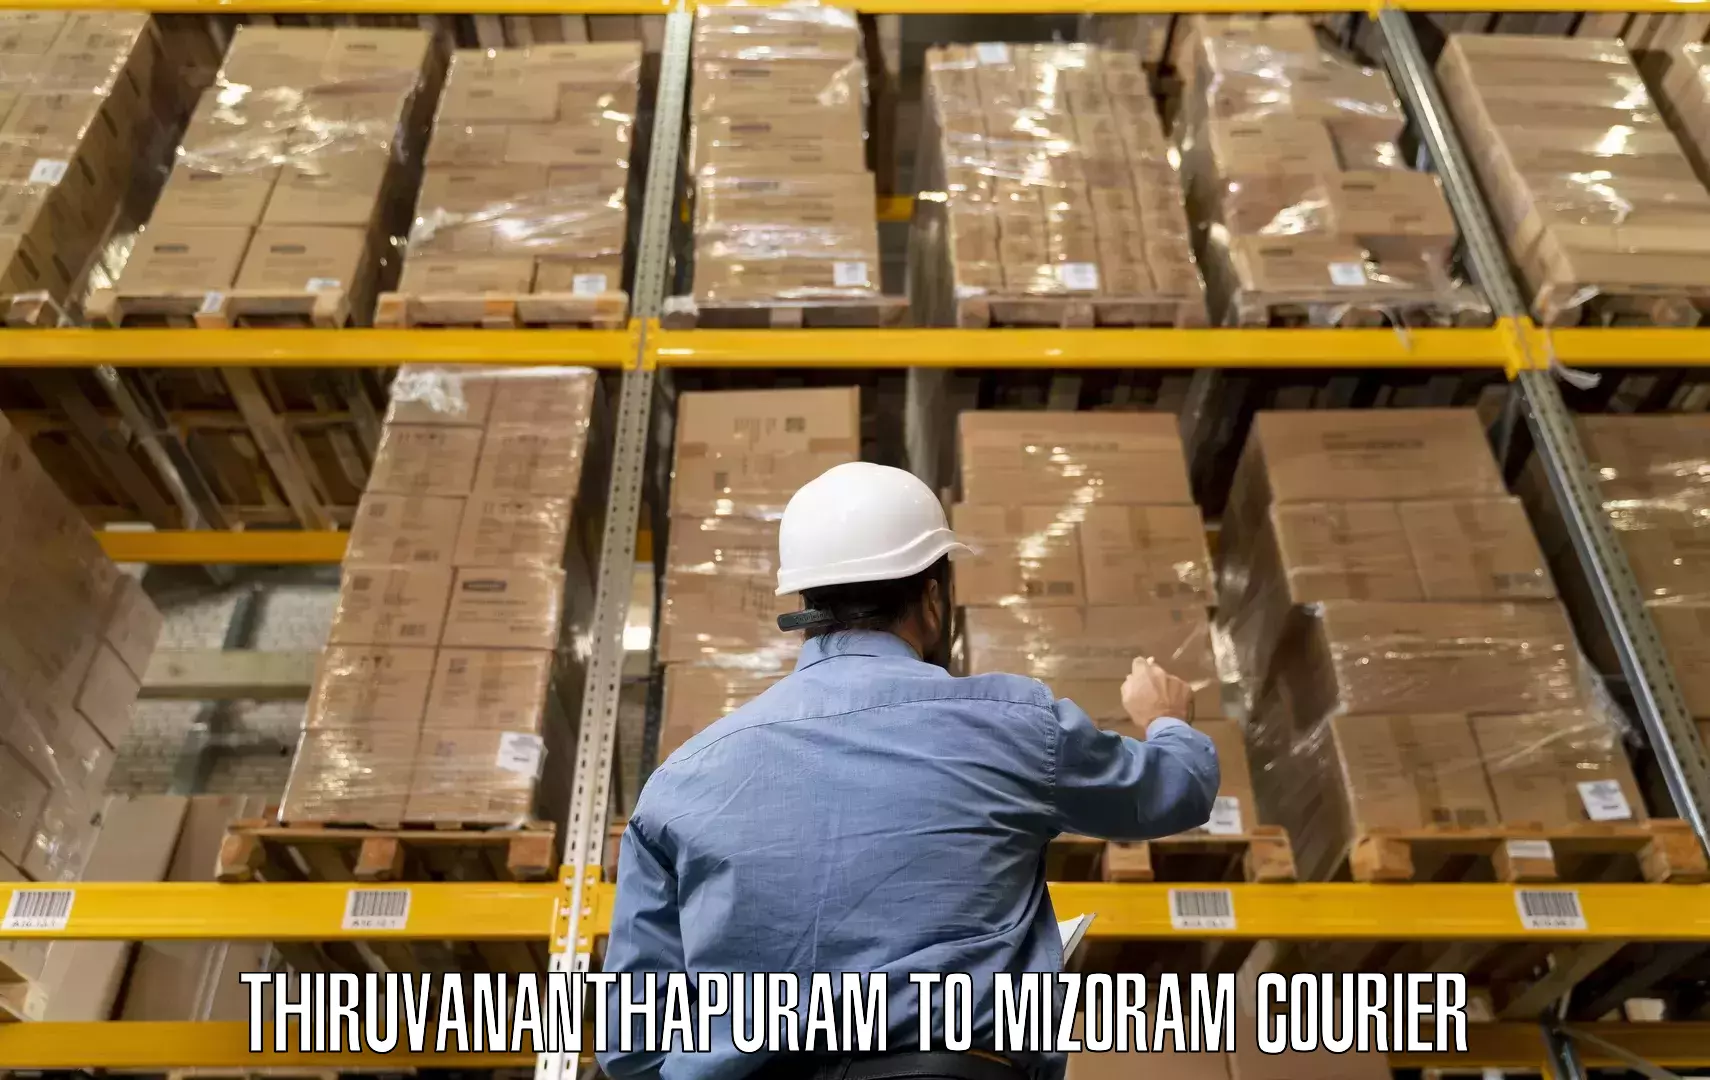 Furniture transport company Thiruvananthapuram to Mizoram